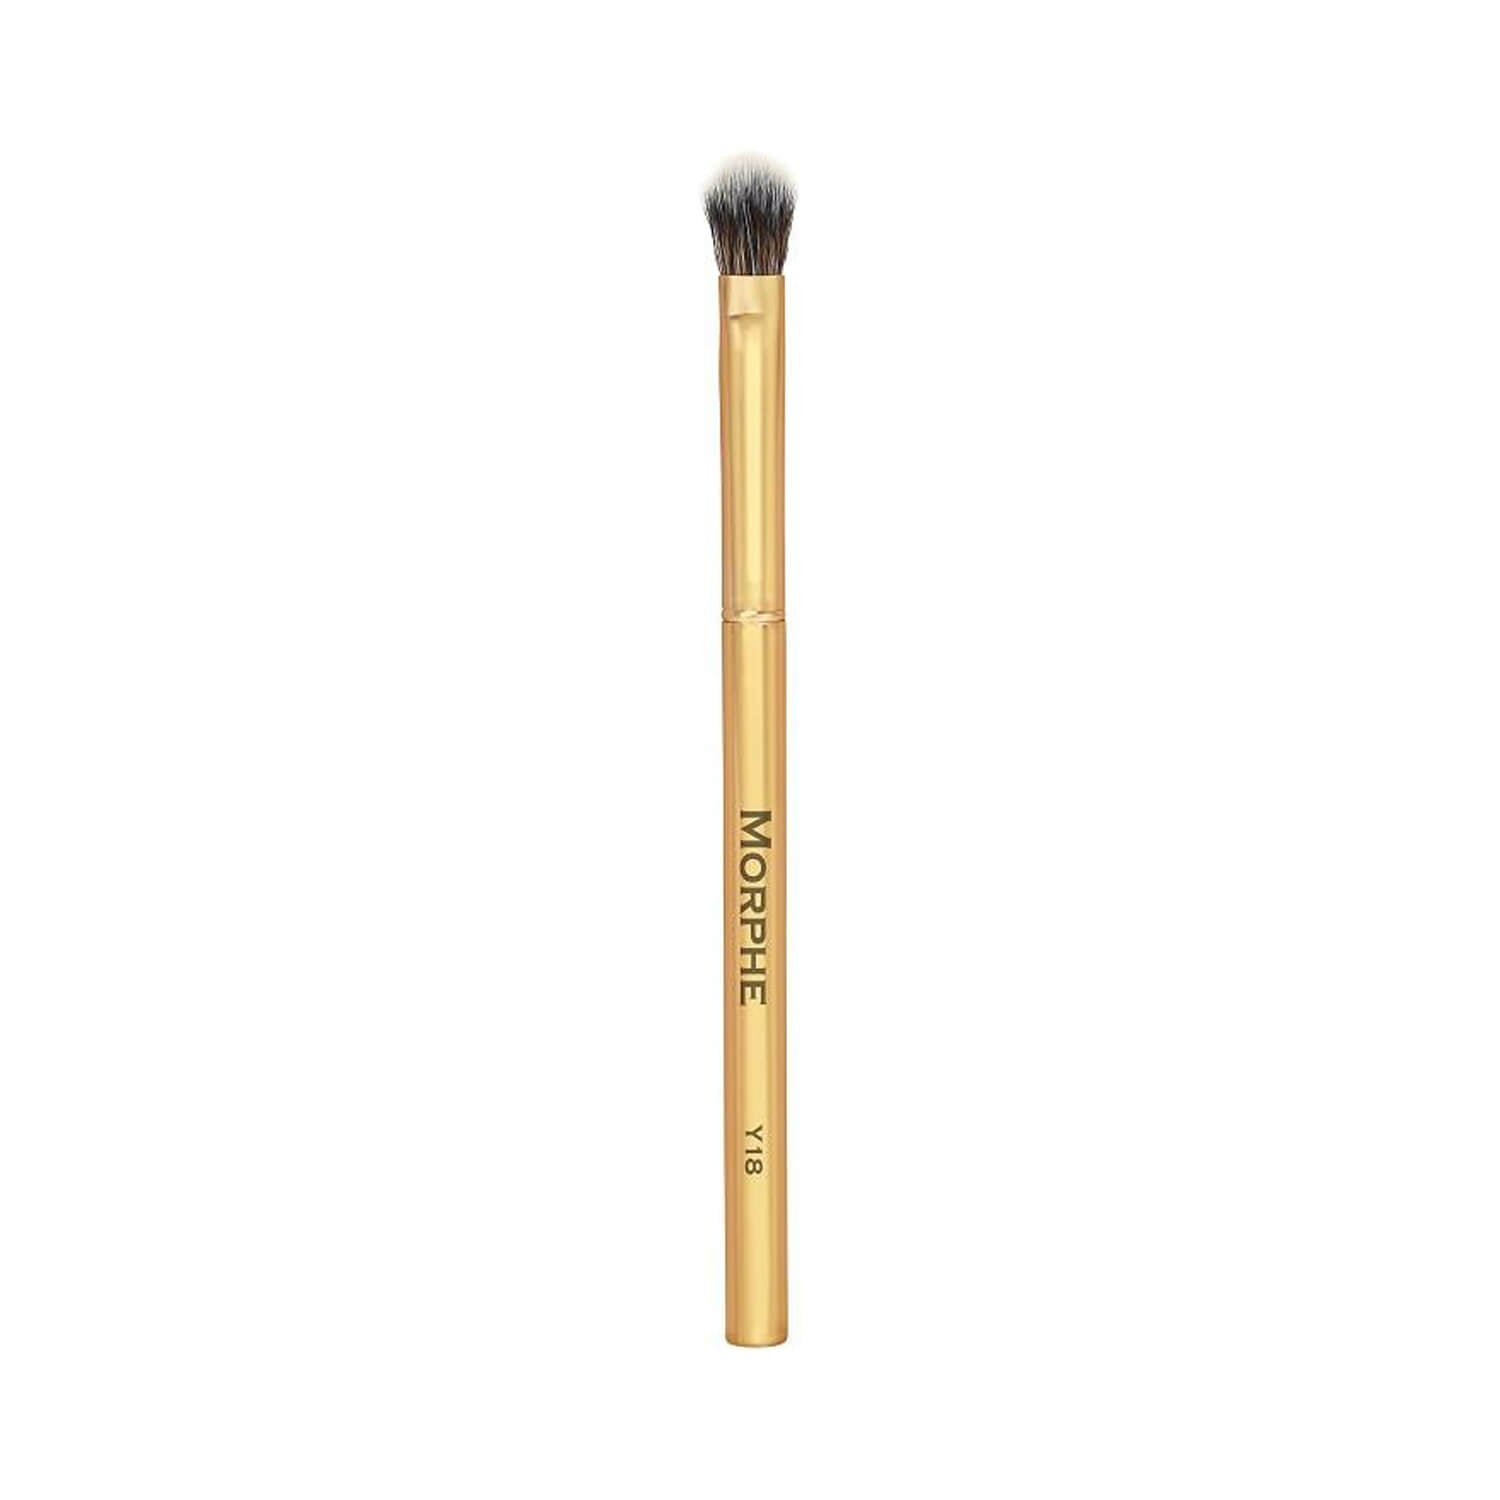 Morphe Cosmetics Y18 Tapered Blending Fluff Brush